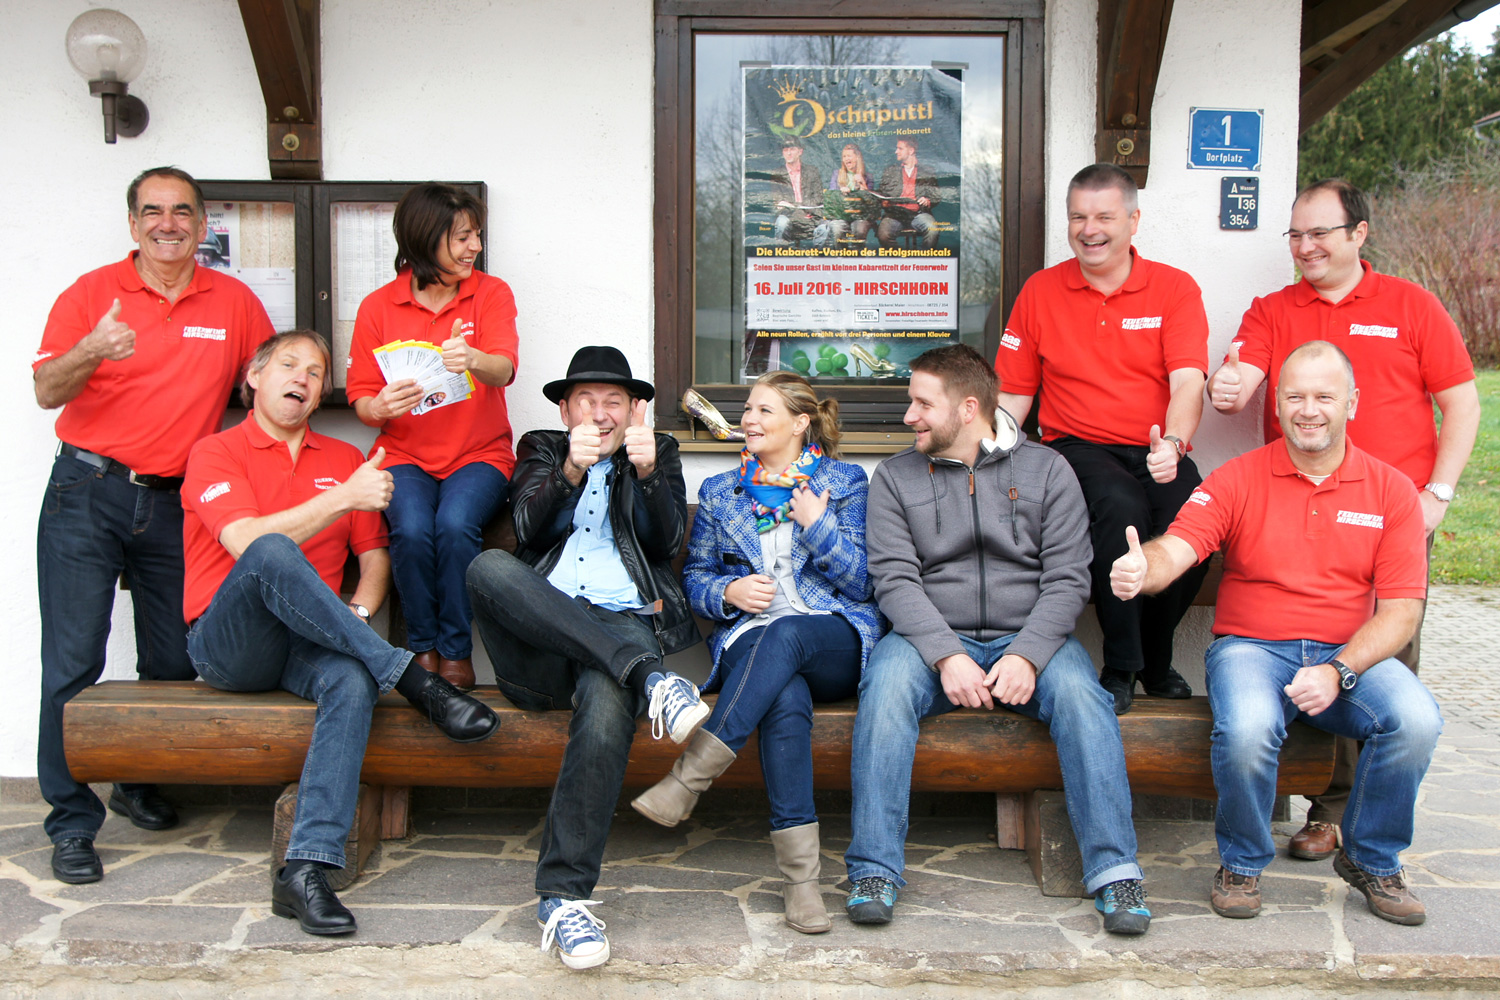 Das Oschnputtl-Team hat zusammen mit den Organisatoren der Feuerwehr Hirschhorn bereits bei Fototermin einen riesen Spaß!